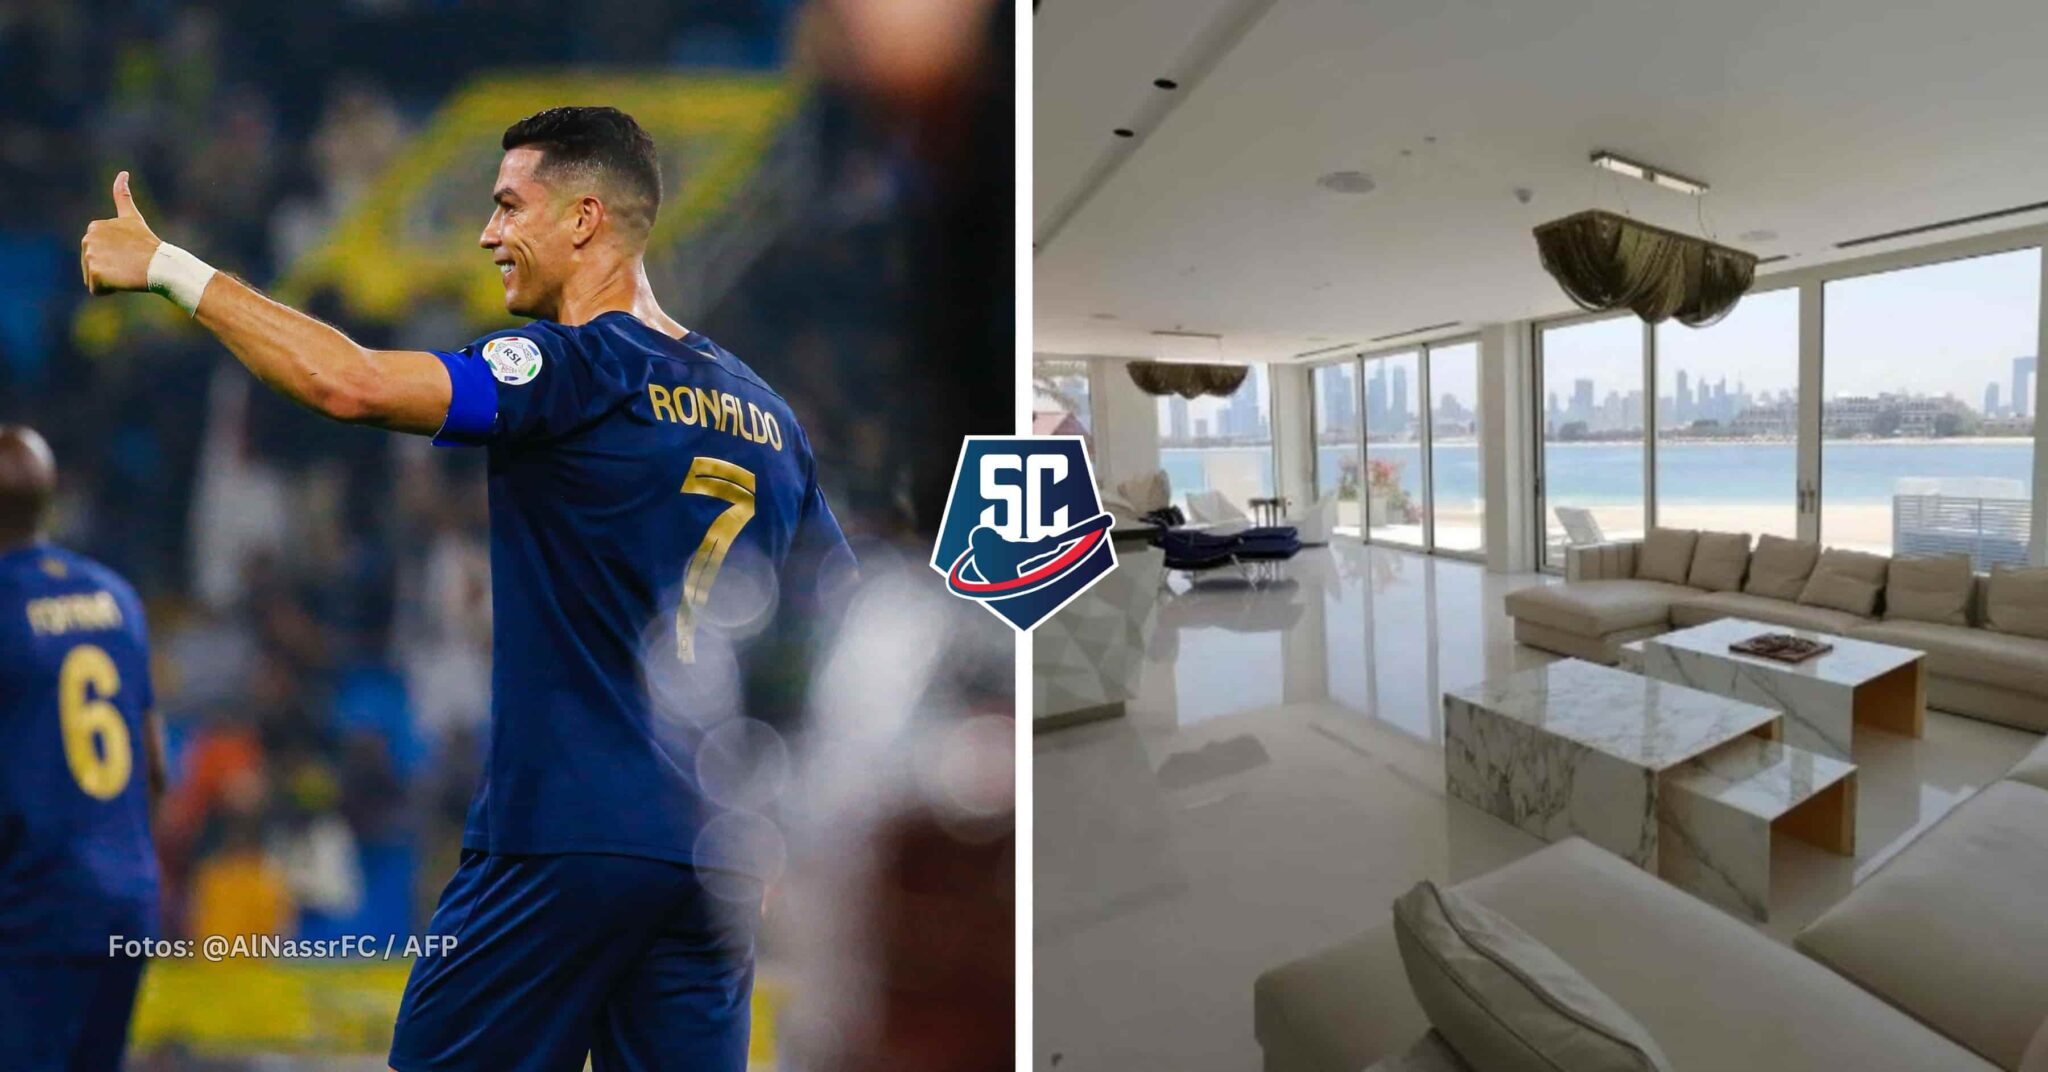 El futbolista portugués Cristiano Ronaldo compró una mansión en la ciudad de Dubai, por un costo de 55 millones de dólares.